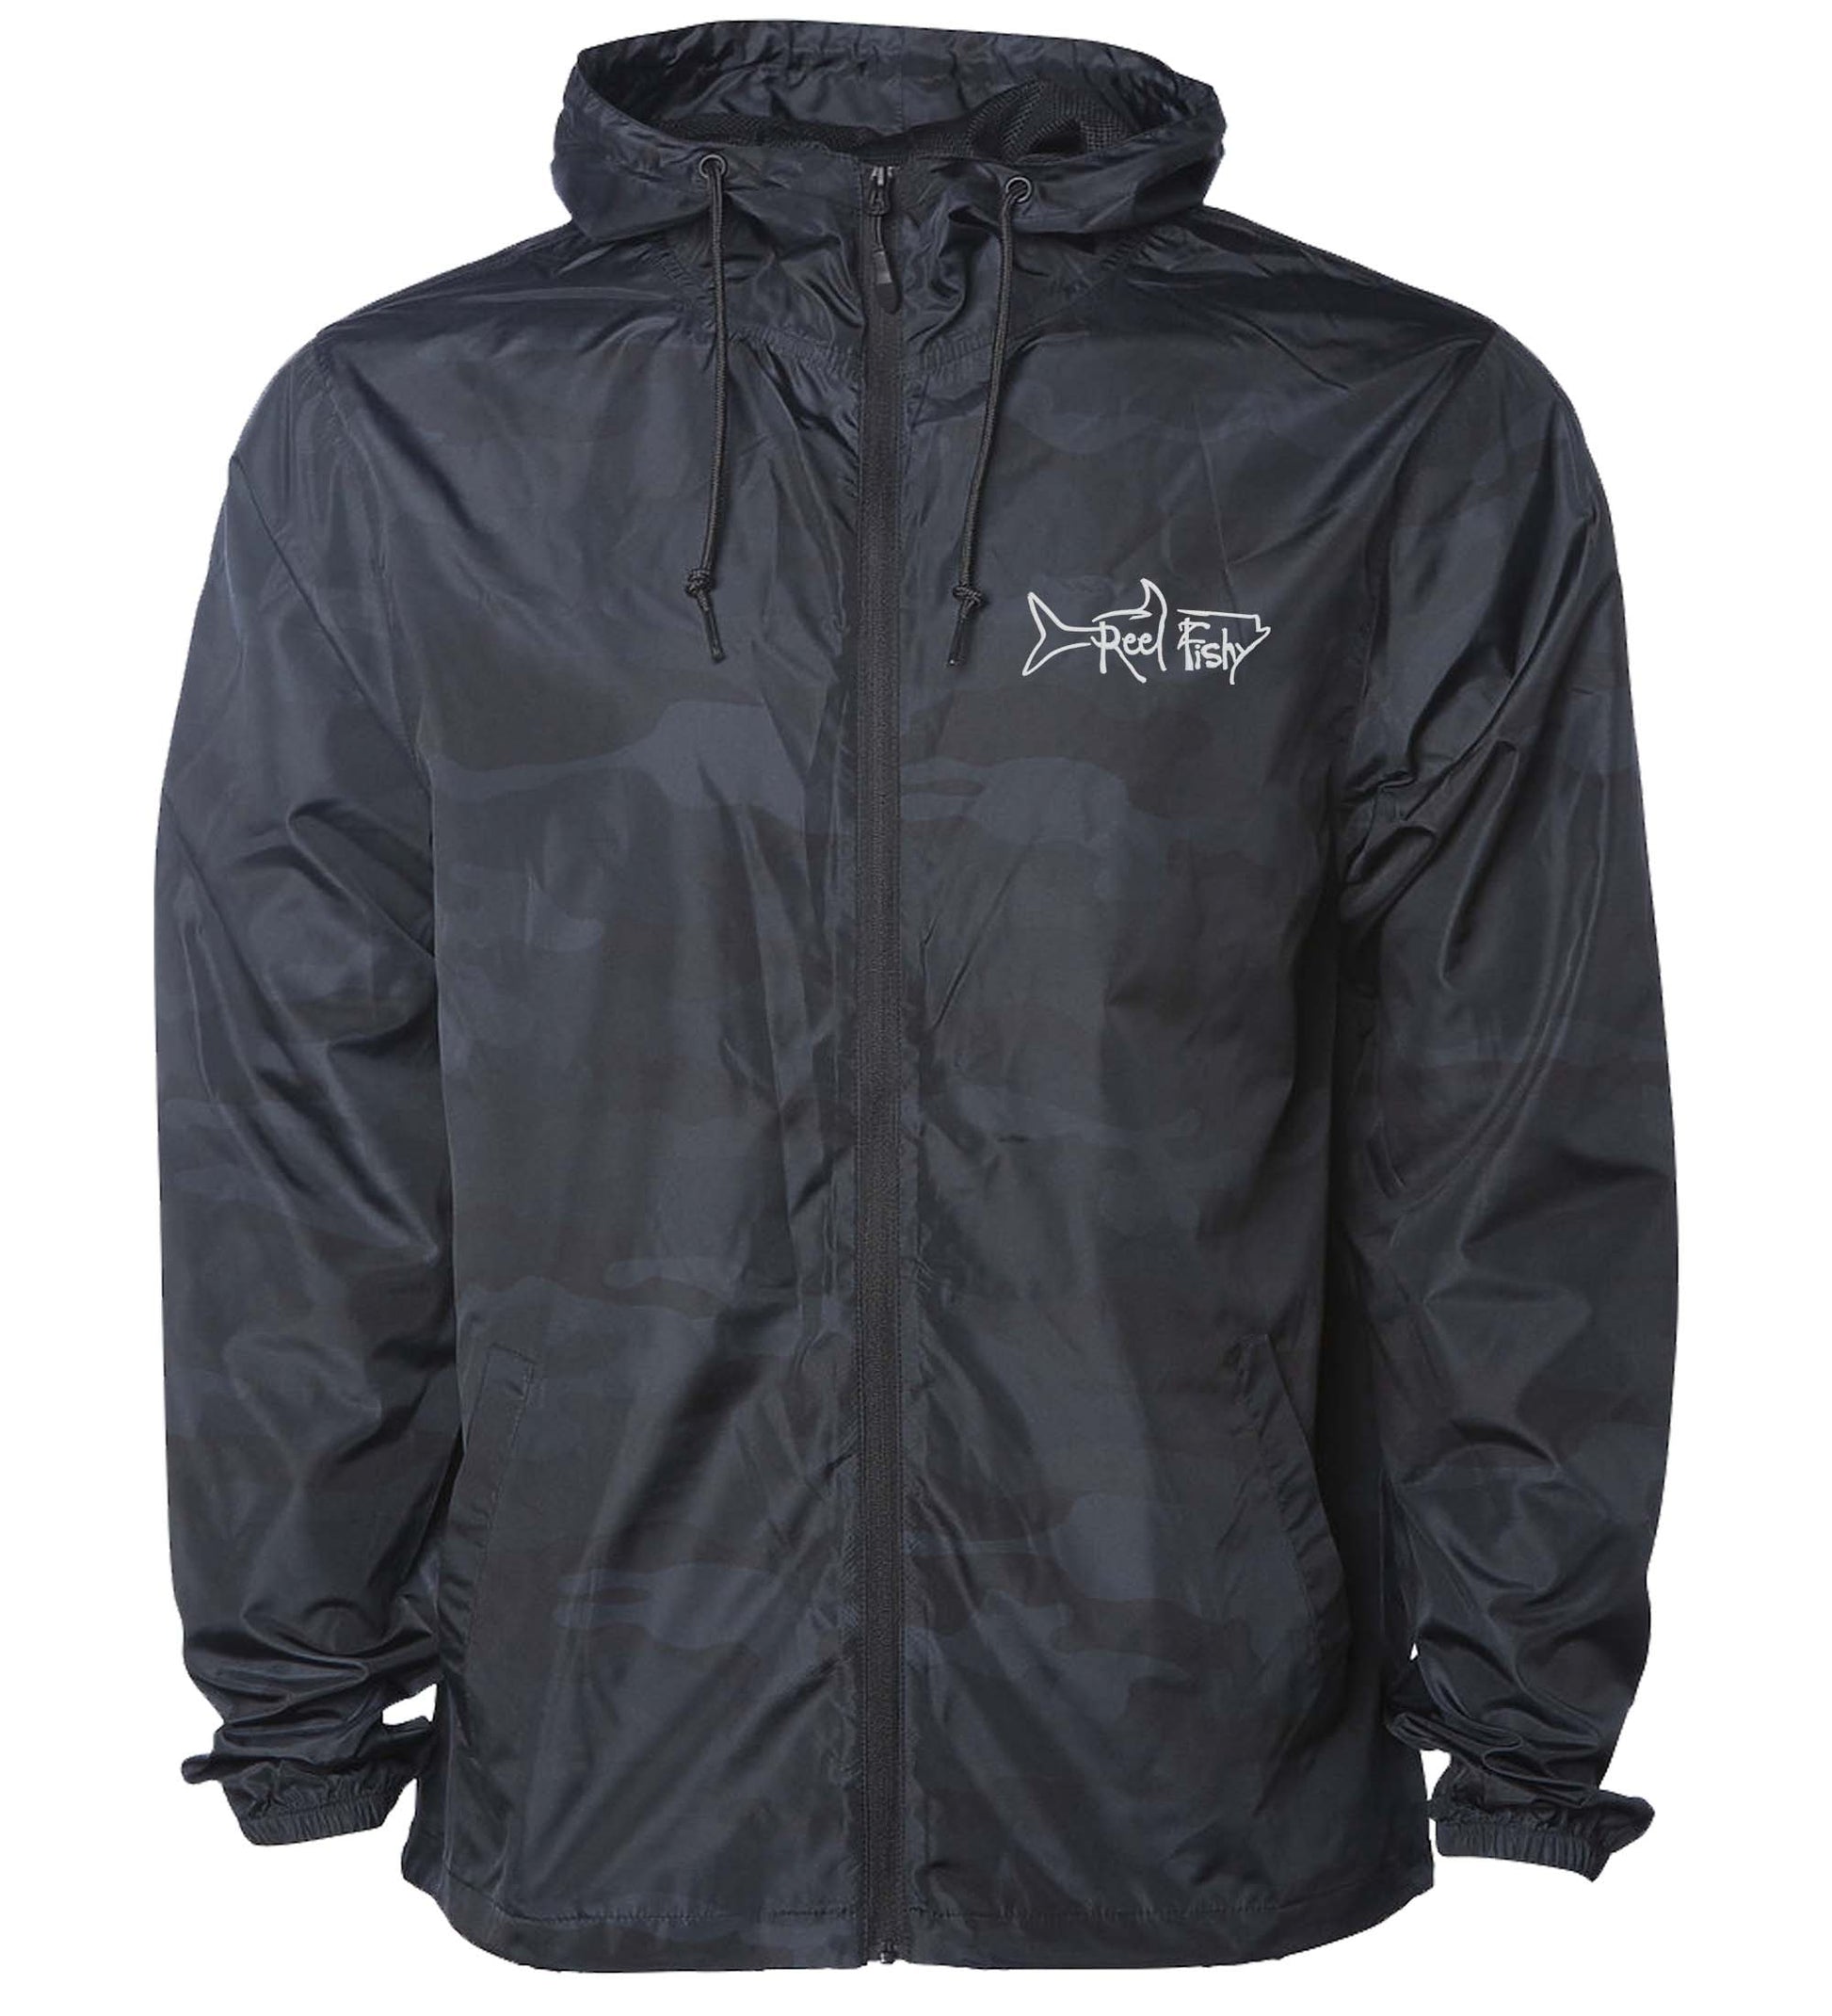 Black Camo Lightweight Windbreaker Jacket with Hood - Water Resistant, Full Zip Front Closure